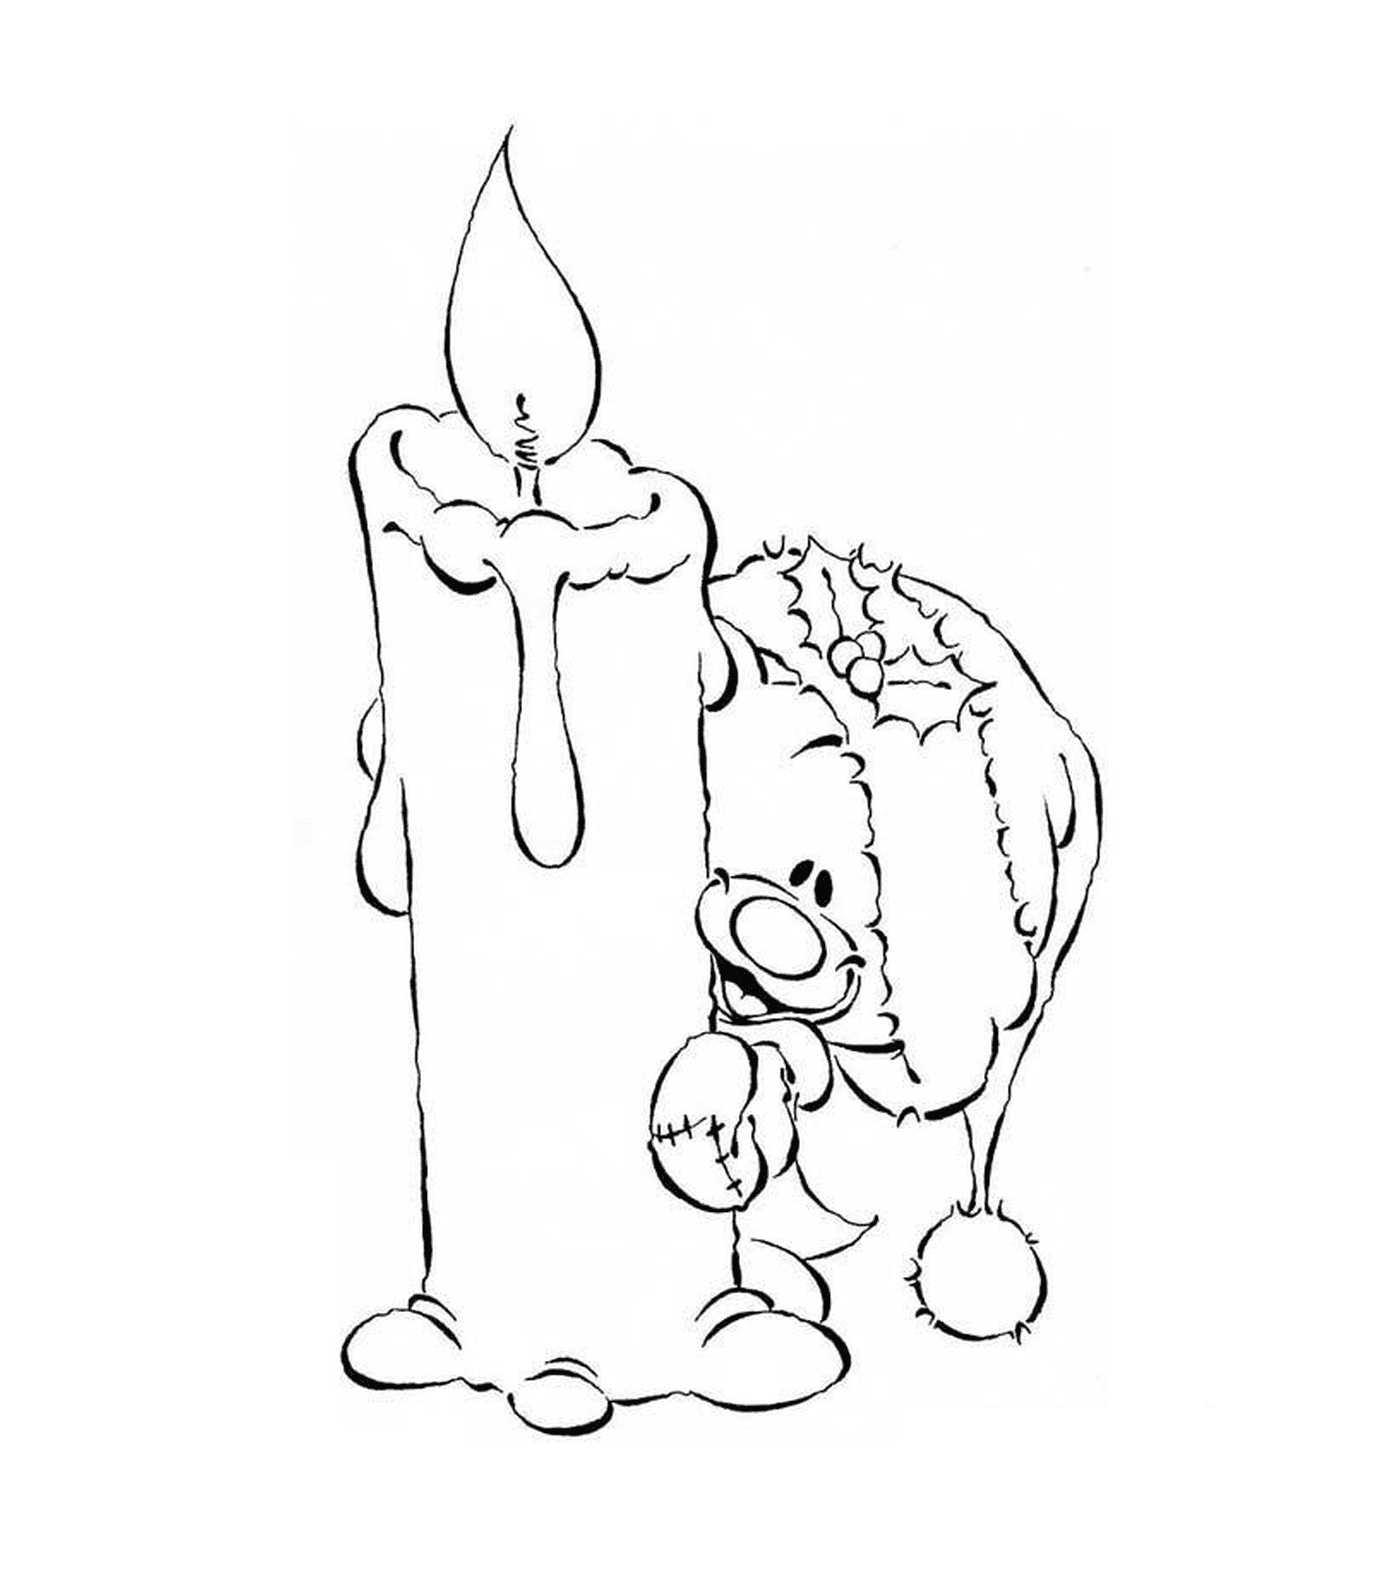  Un orsacchiotto vicino ad una candela accesa 